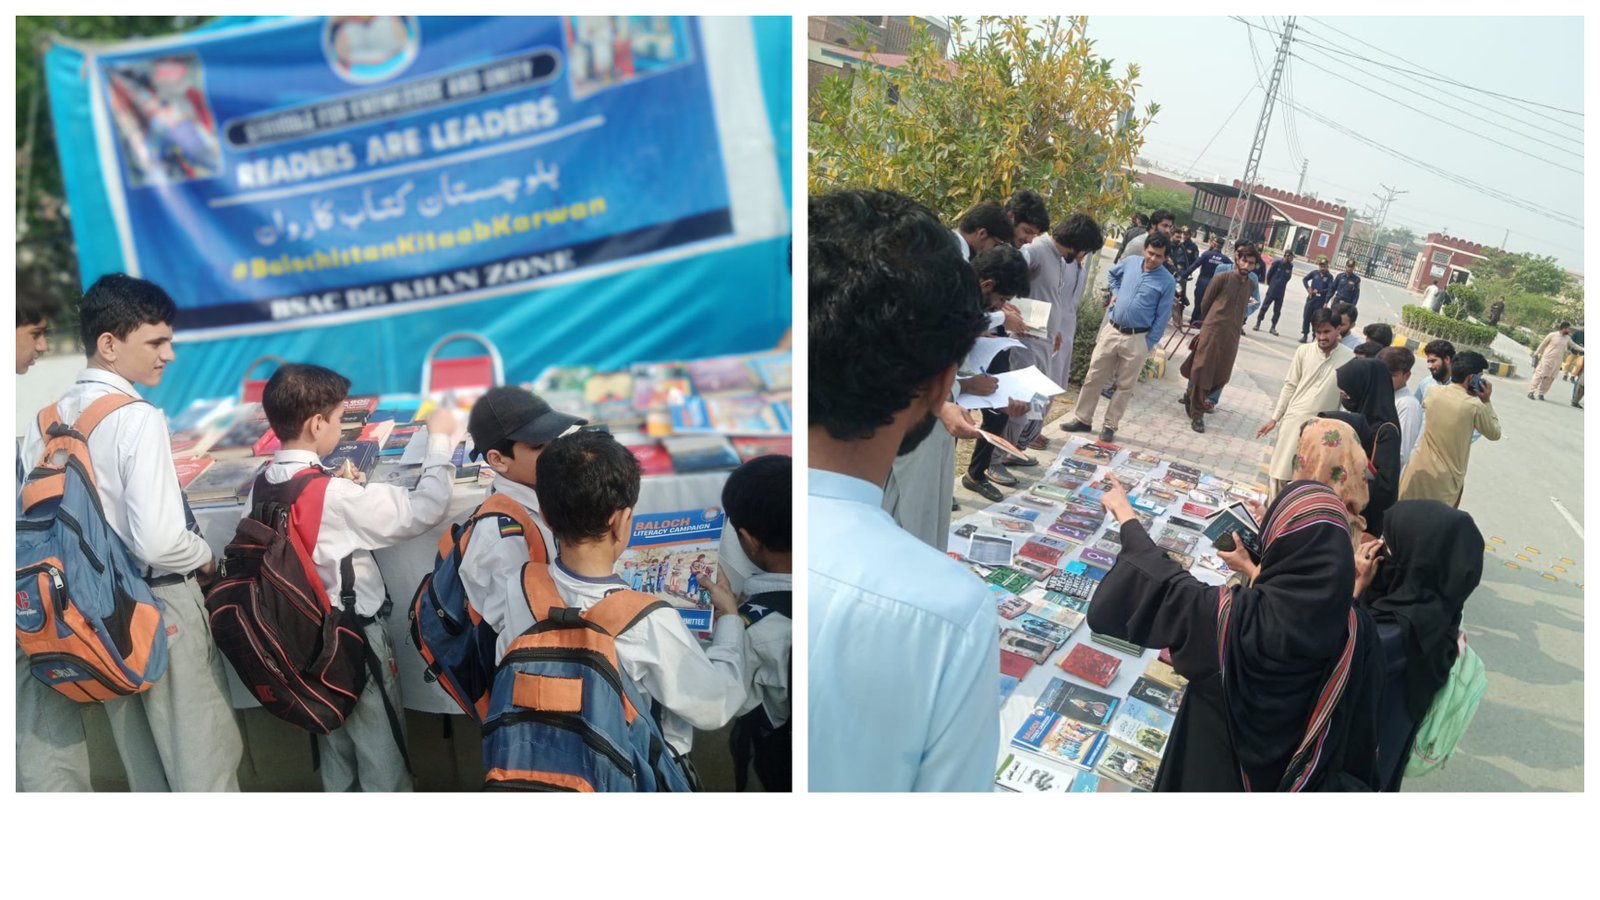 ڈی جی خان میں بلوچستان کتاب کاروان کے نام پر دو روزہ کتب میلہ کا انعقاد کیاگیا ۔ بساک